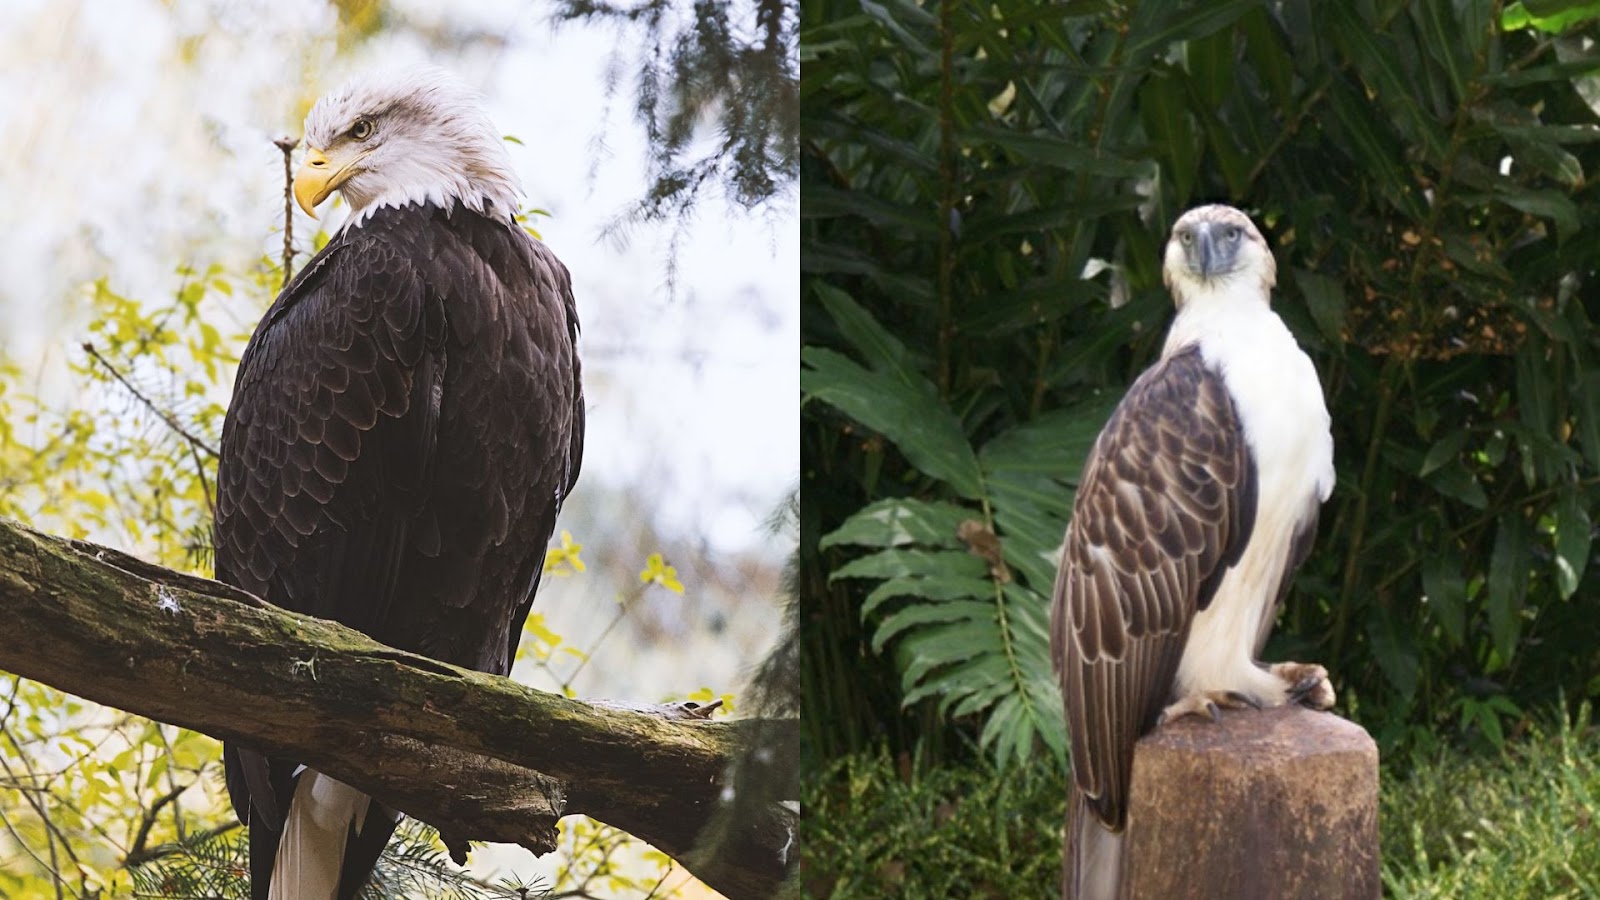 Bald eagle & Philippine eagle